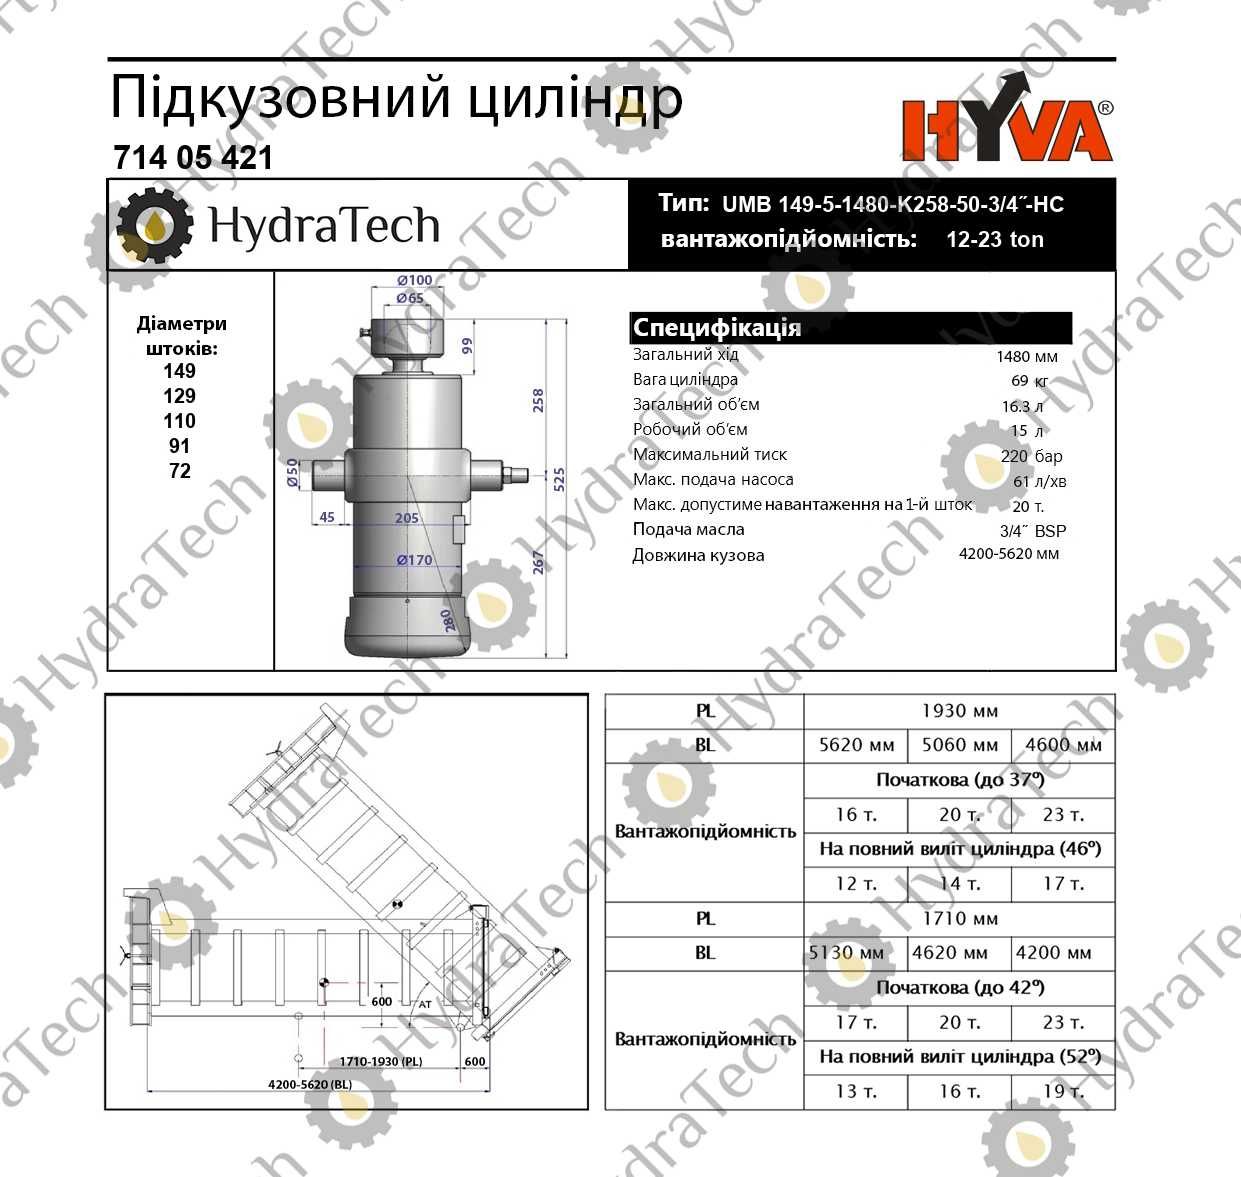 Гідроциліндр підйому кузова Hyva UMB 149-5-1480